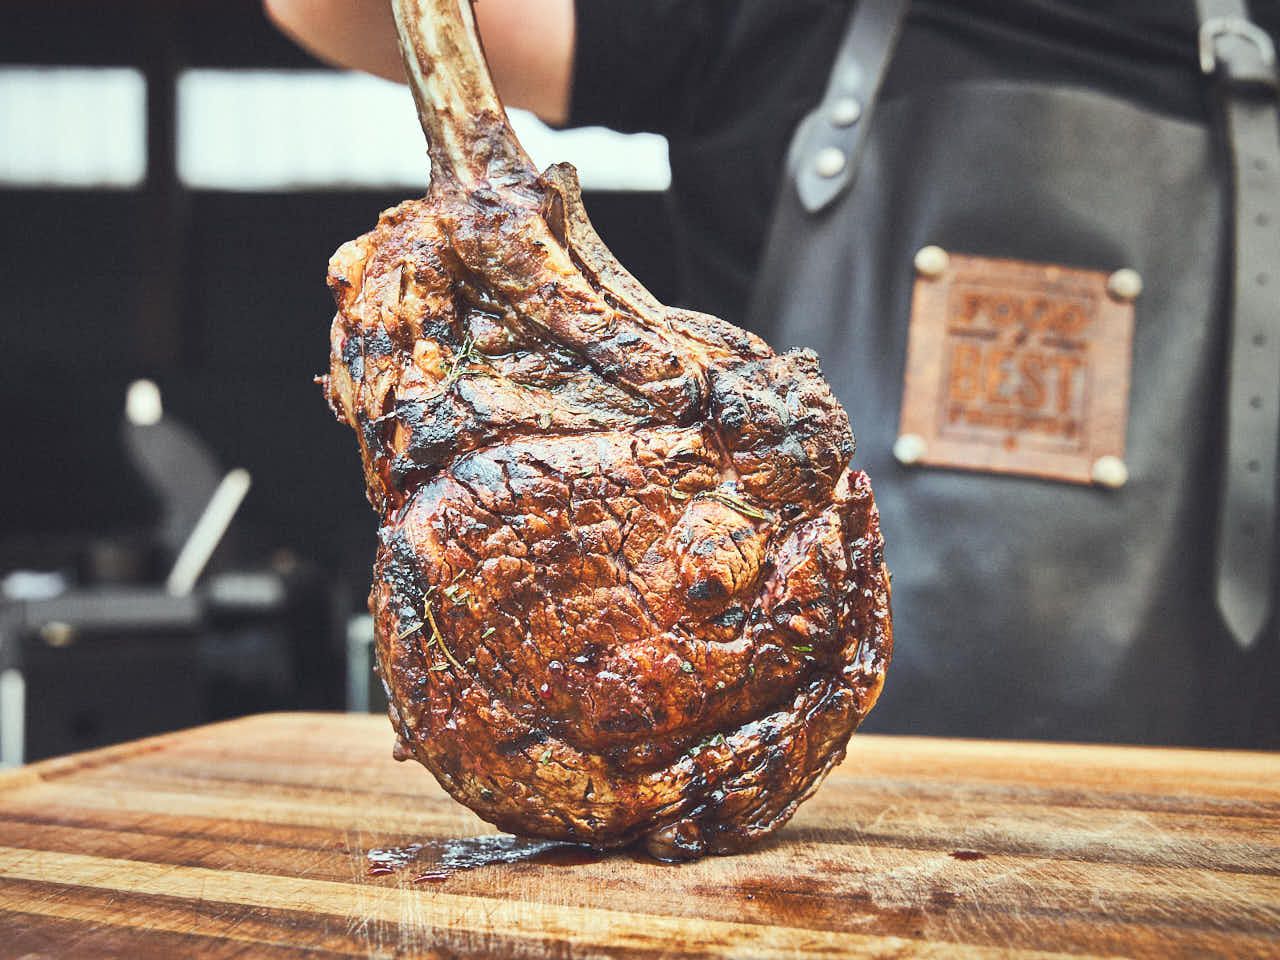 Grillen oder braten?: Tomahawk Steak richtig zubereiten - Freizeit